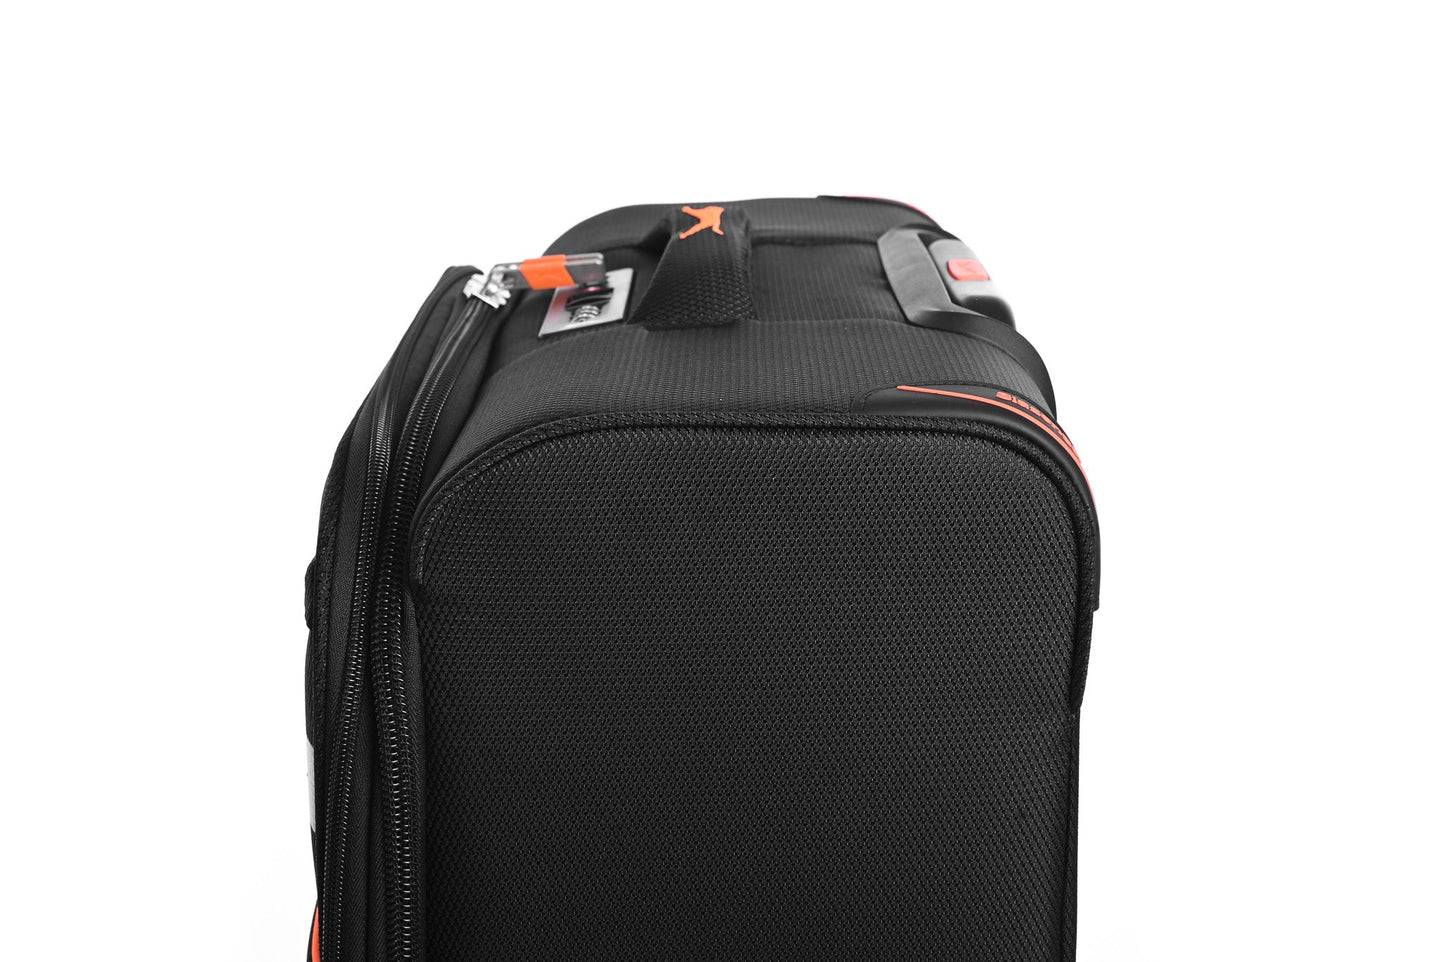 SLAZENGER - מזוודה מבד בינונית 23.5" דגם BARCELONA בצבע שחור - MASHBIR//365